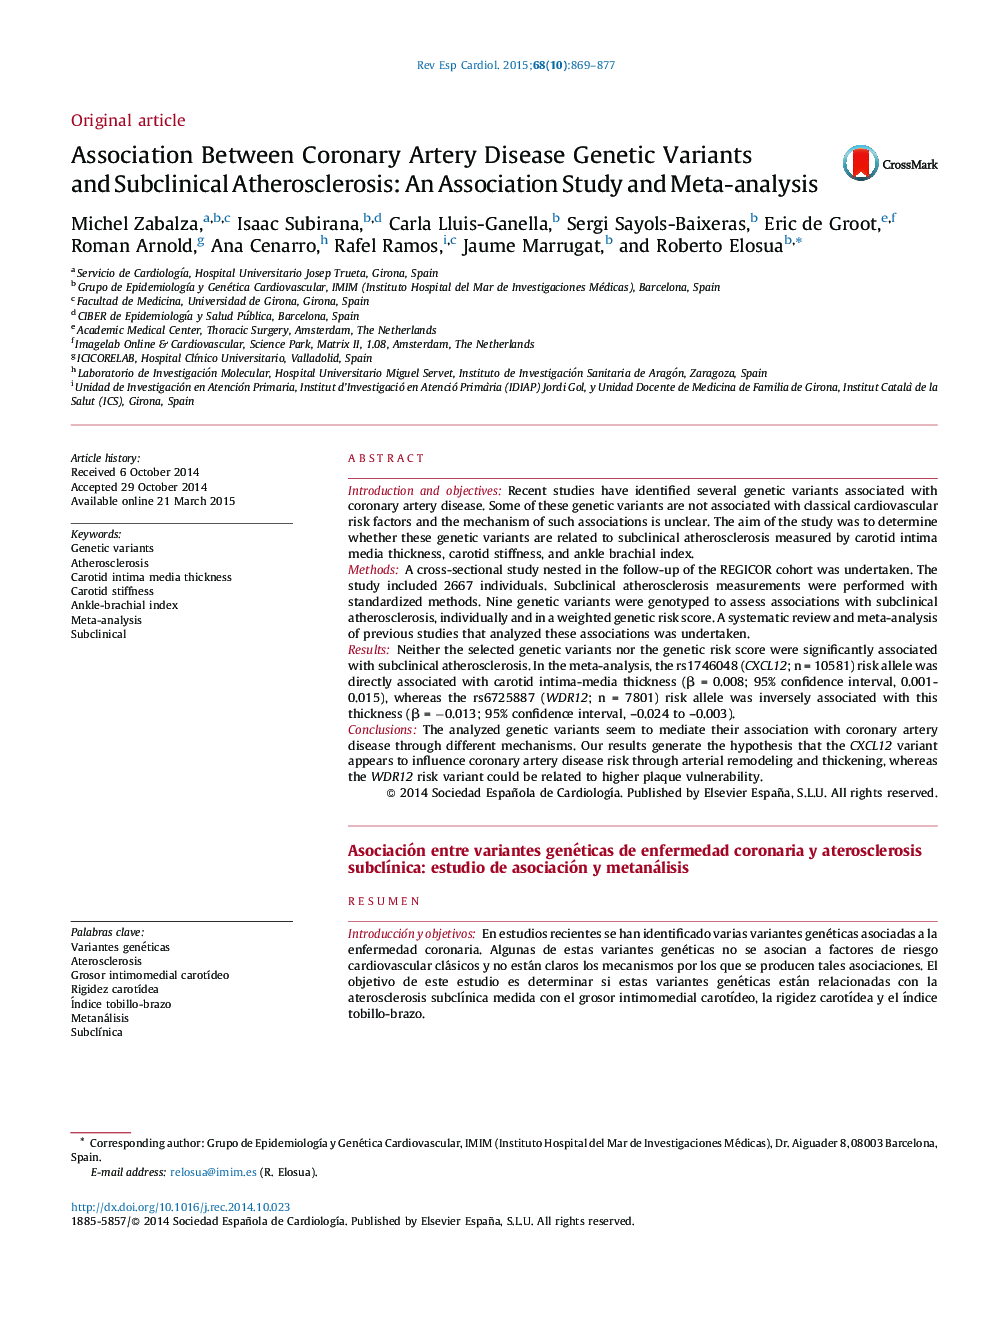 ارتباط بین متغیرهای ژنتیکی بیماری های عروق کرونر و آترواسکلروز زیر بالینی: مطالعه انجمن و متاآنالیز 